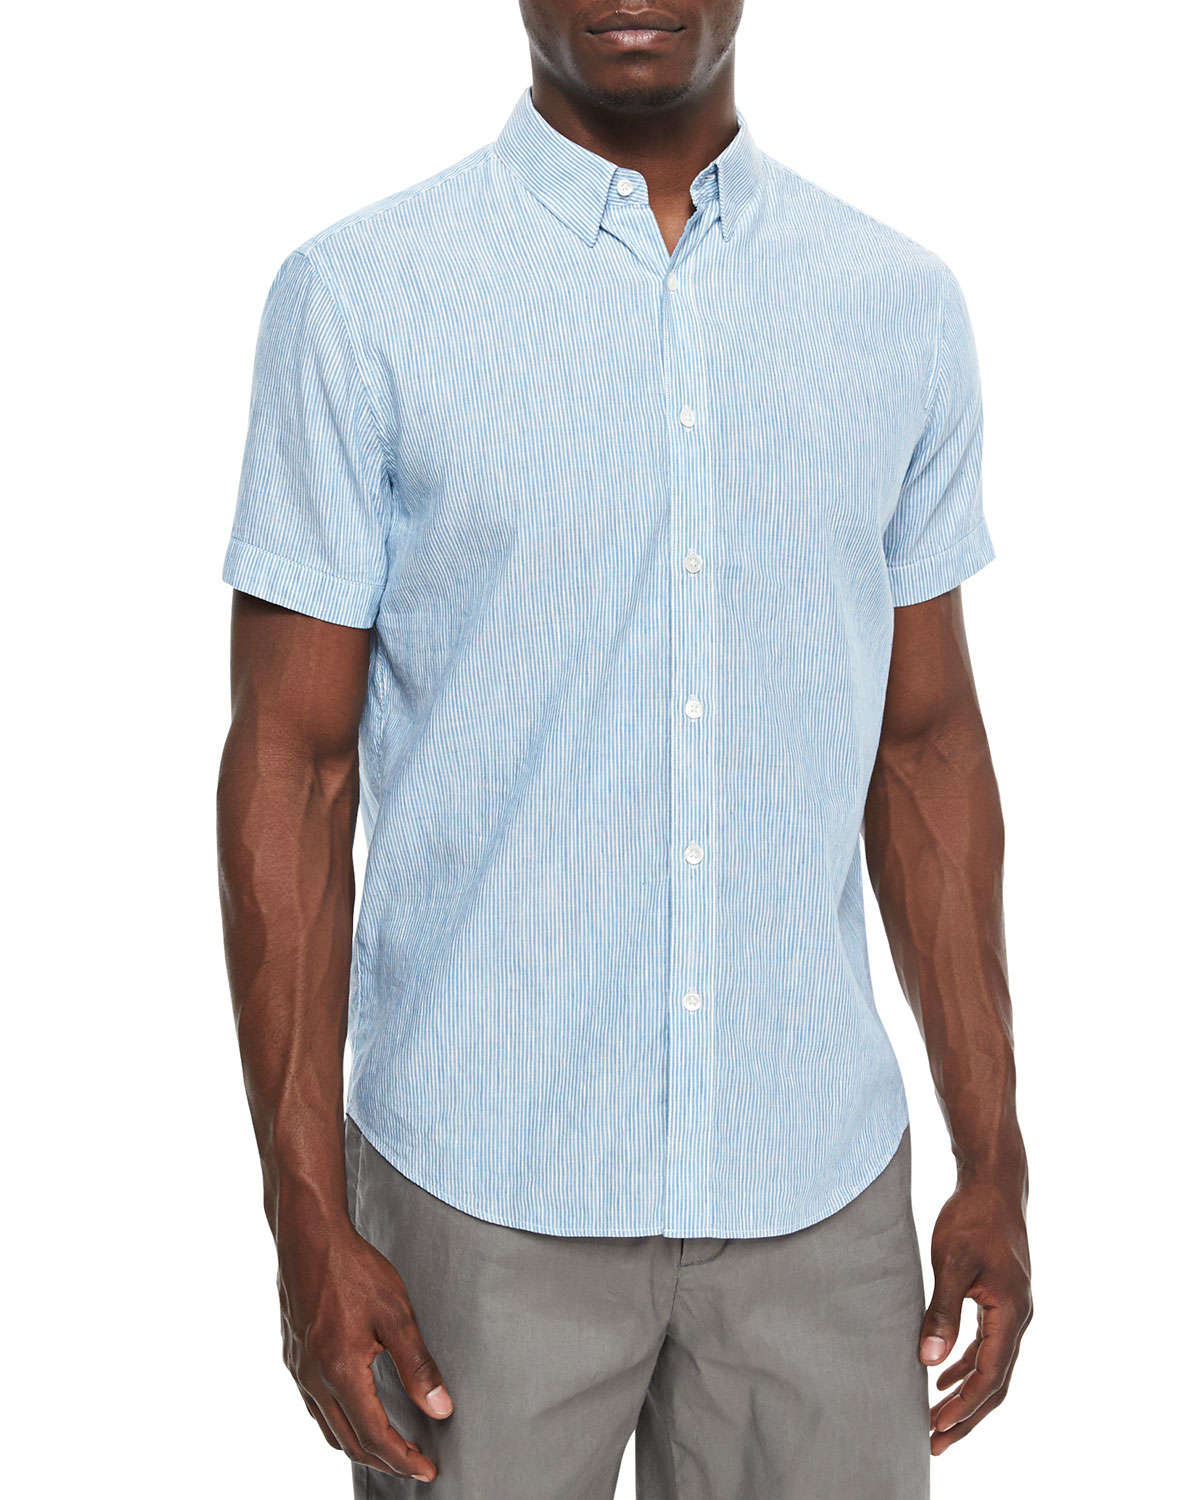 Theory Mini-Stripe Short-Sleeved Linen-Blend Shirt in Blue for Men - Lyst